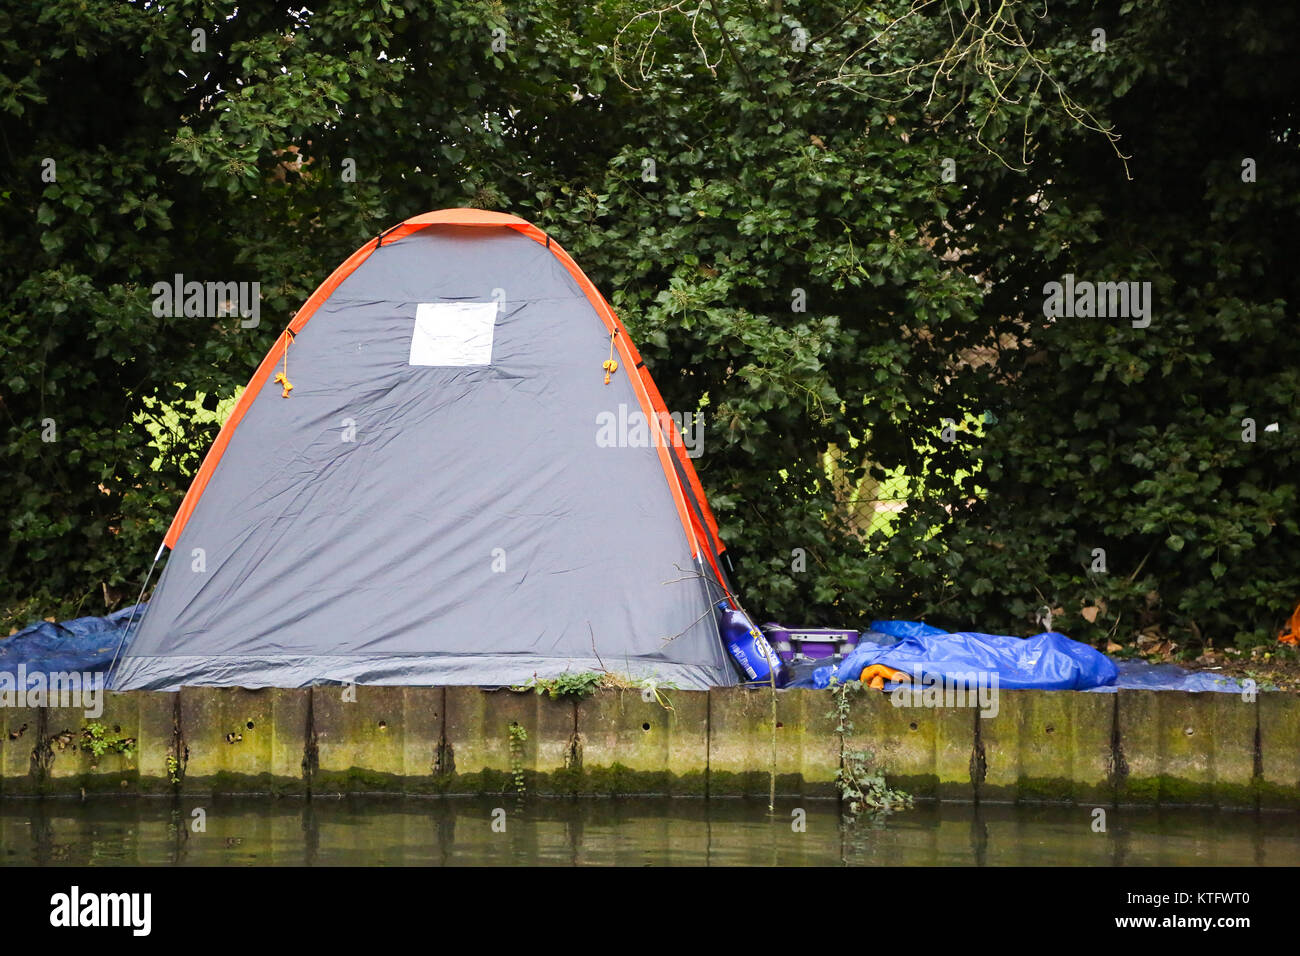 Au bord d'une tente Banque de photographies et d'images à haute résolution  - Page 5 - Alamy